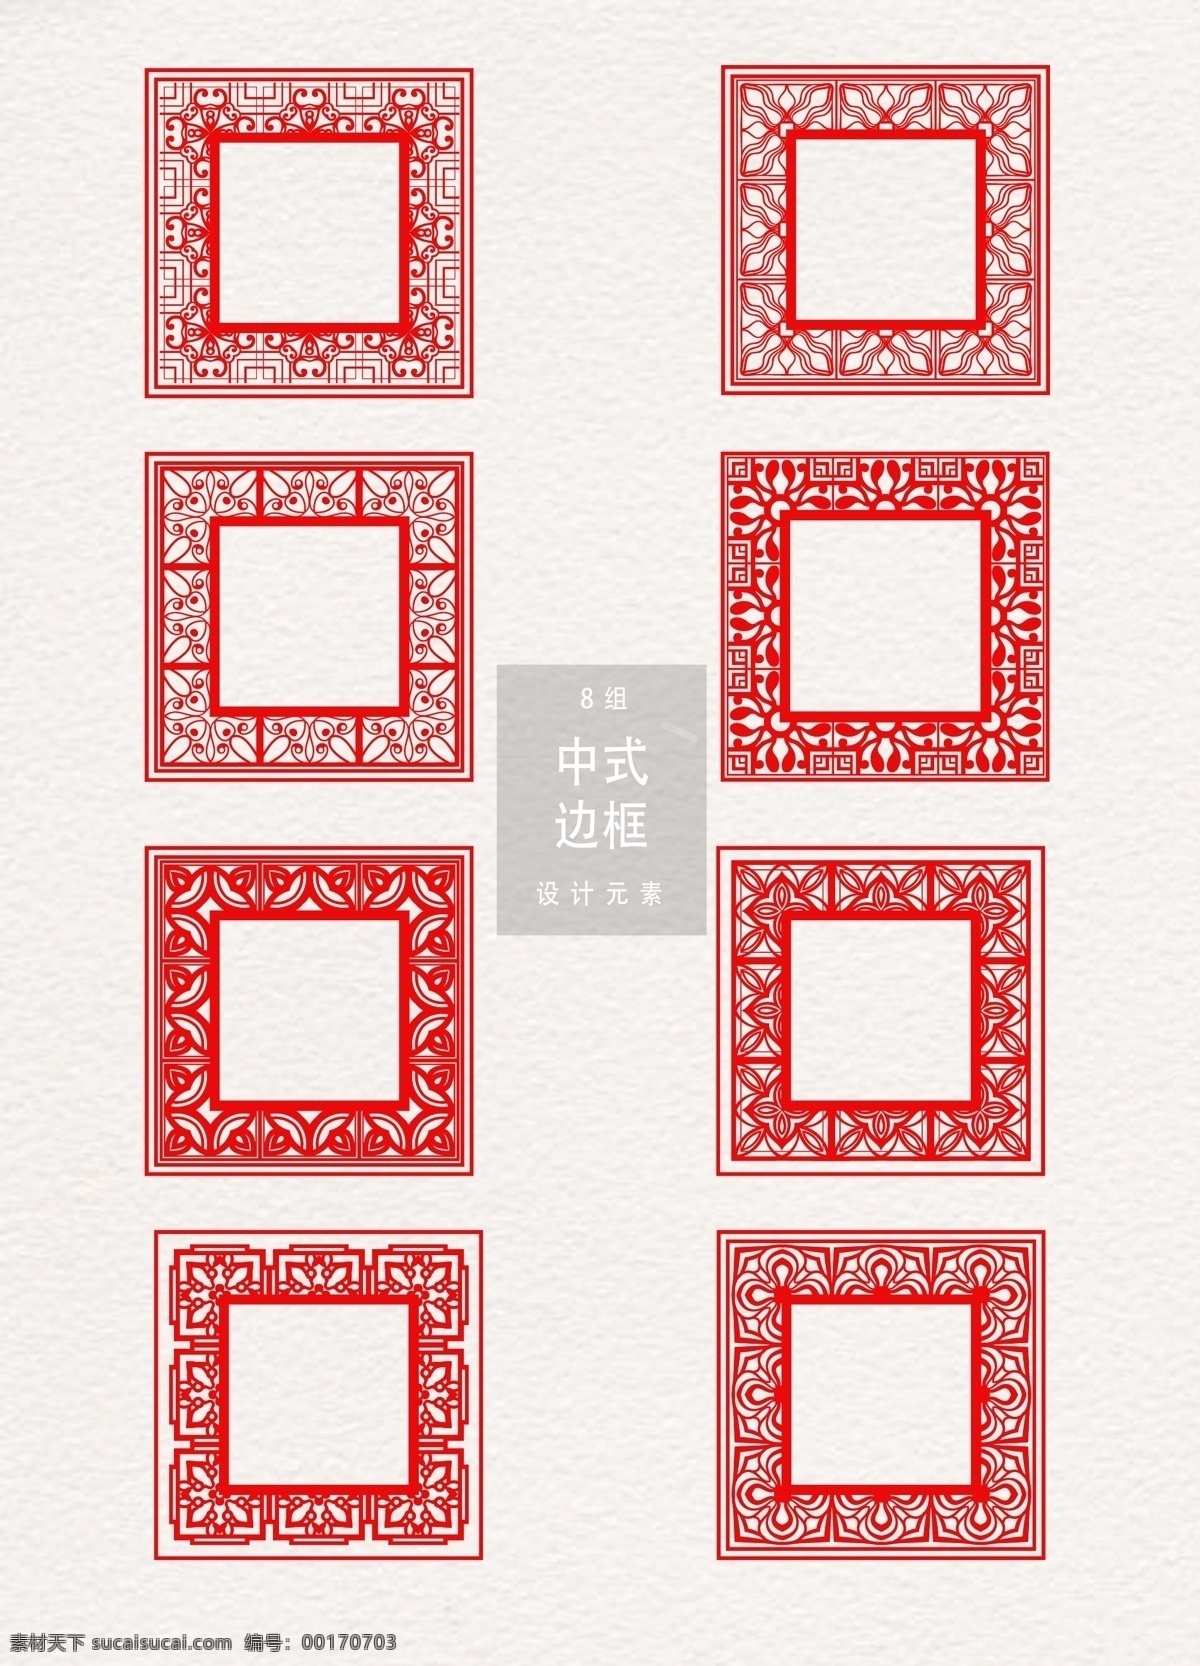 红色 传统 边框 矢量 矢量素材 花纹边框 中式 元素 中式边框 中国元素 中国花纹 红色边框 传统边框 ai素材